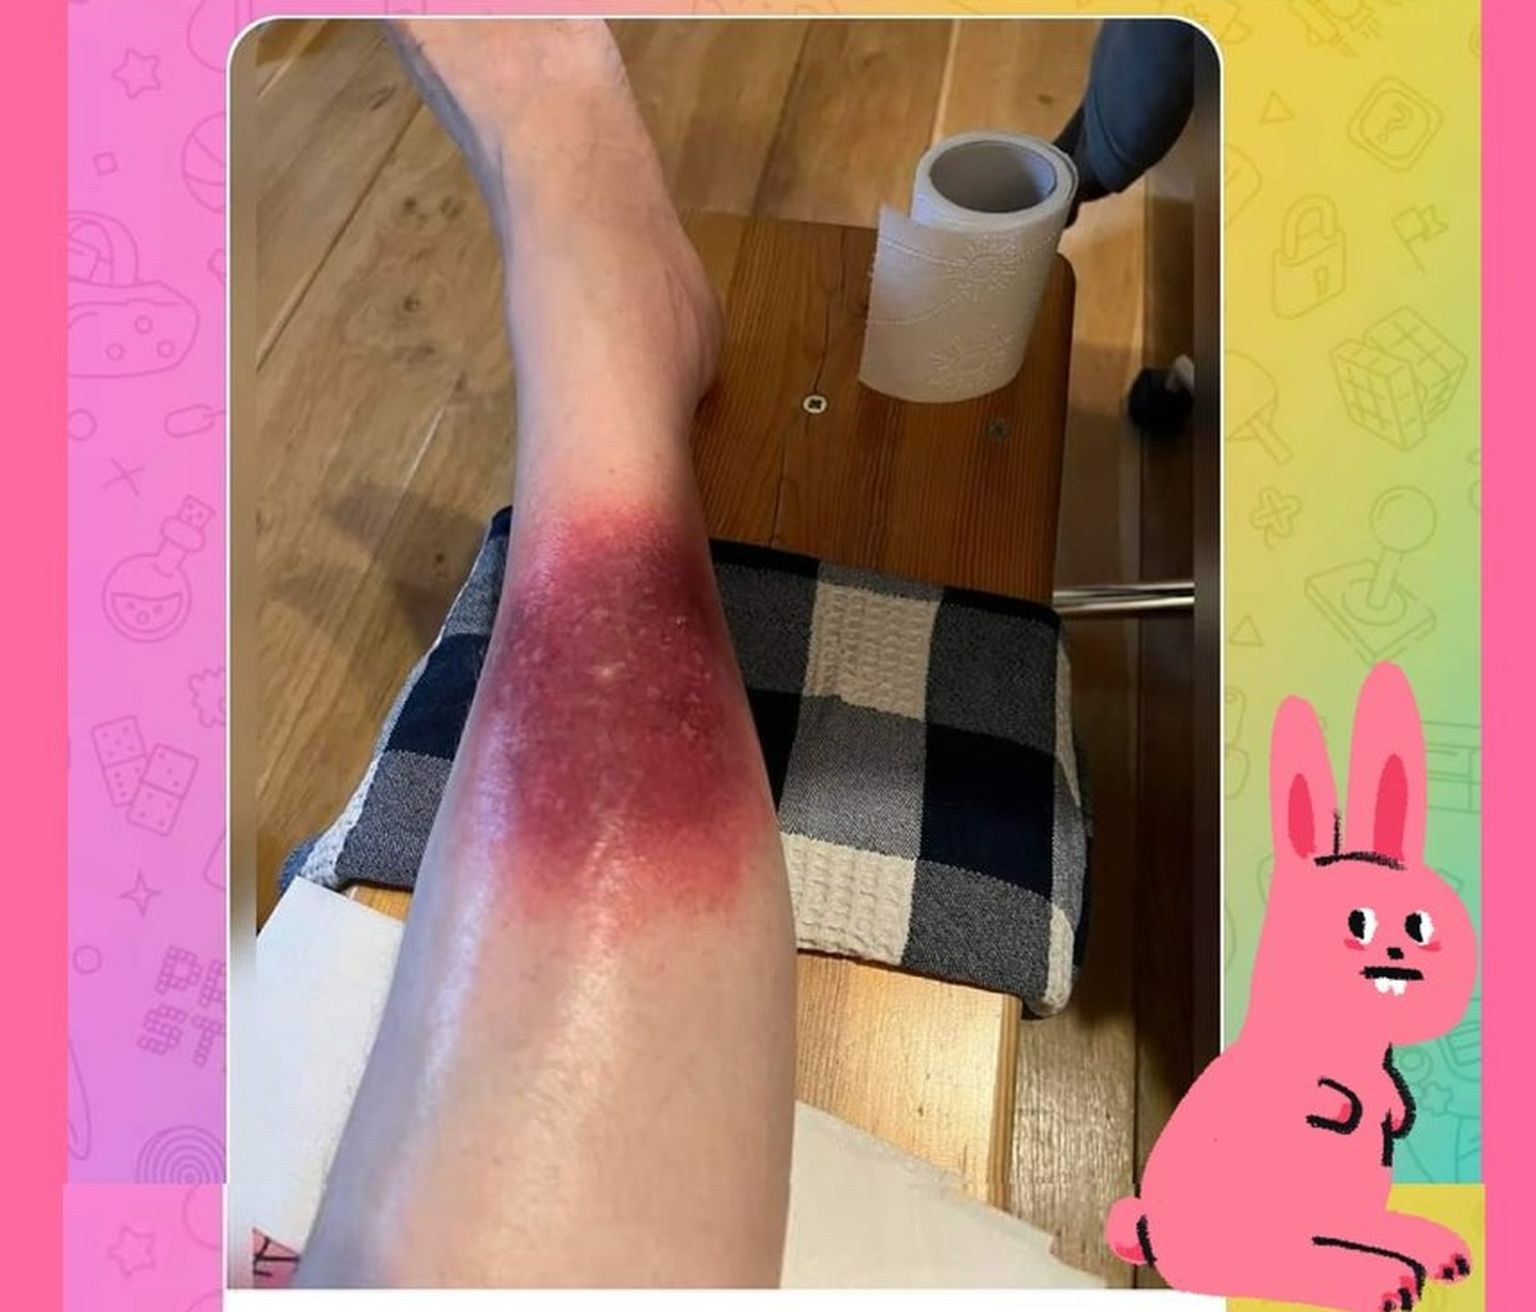 В социальной сети женщина рассказала, как лечит сыпь на ноге с помощью MMS.